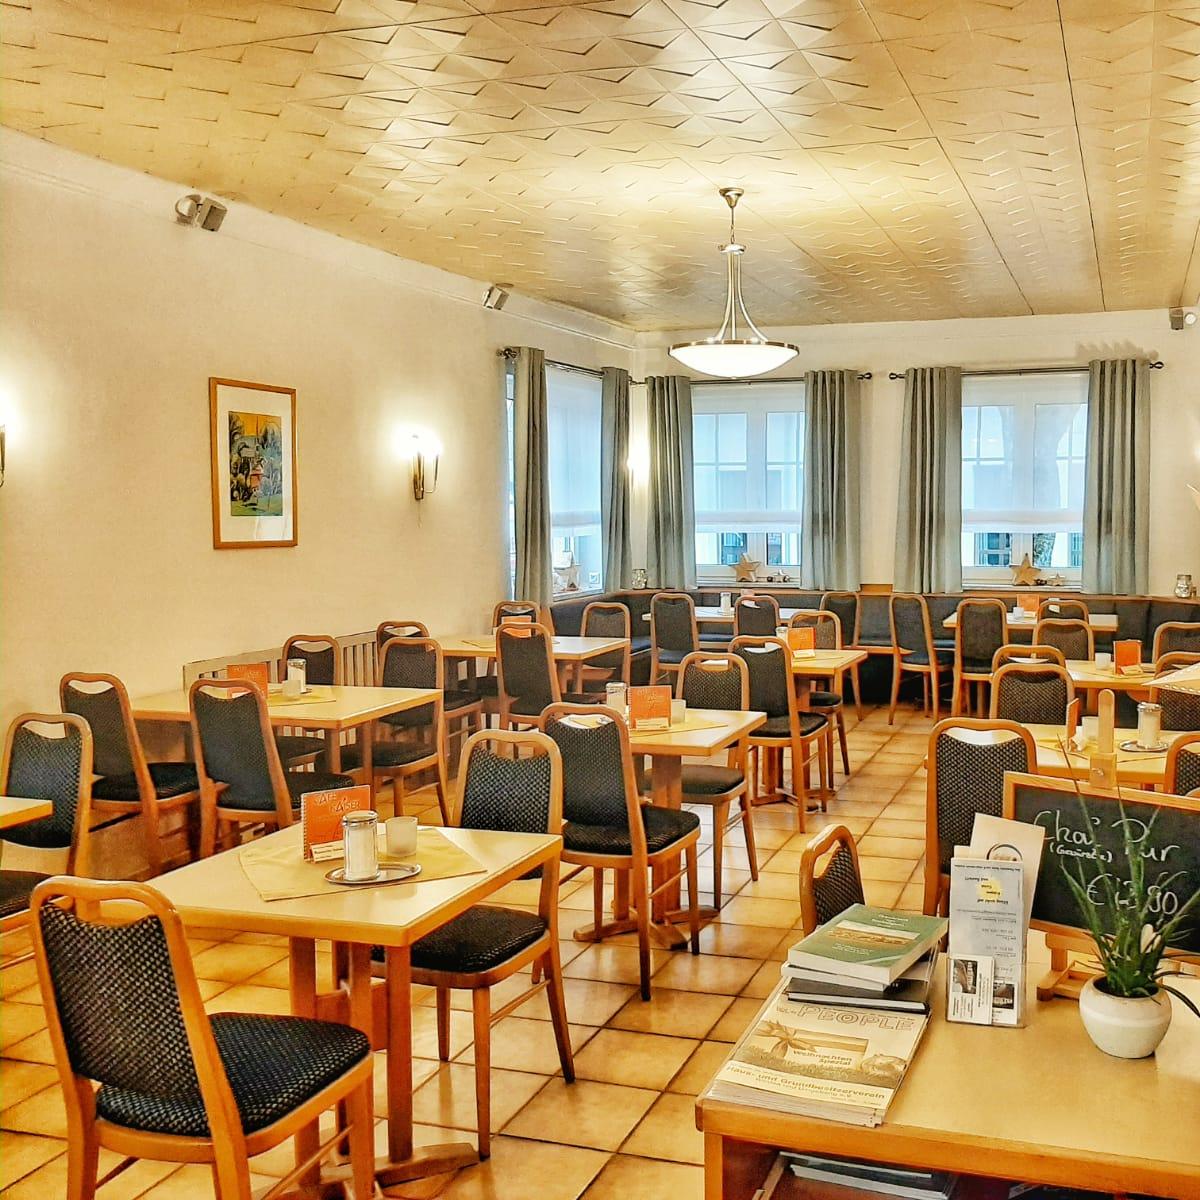 Restaurant "Café & Konditorei Kaiser" in Bischofsgrün